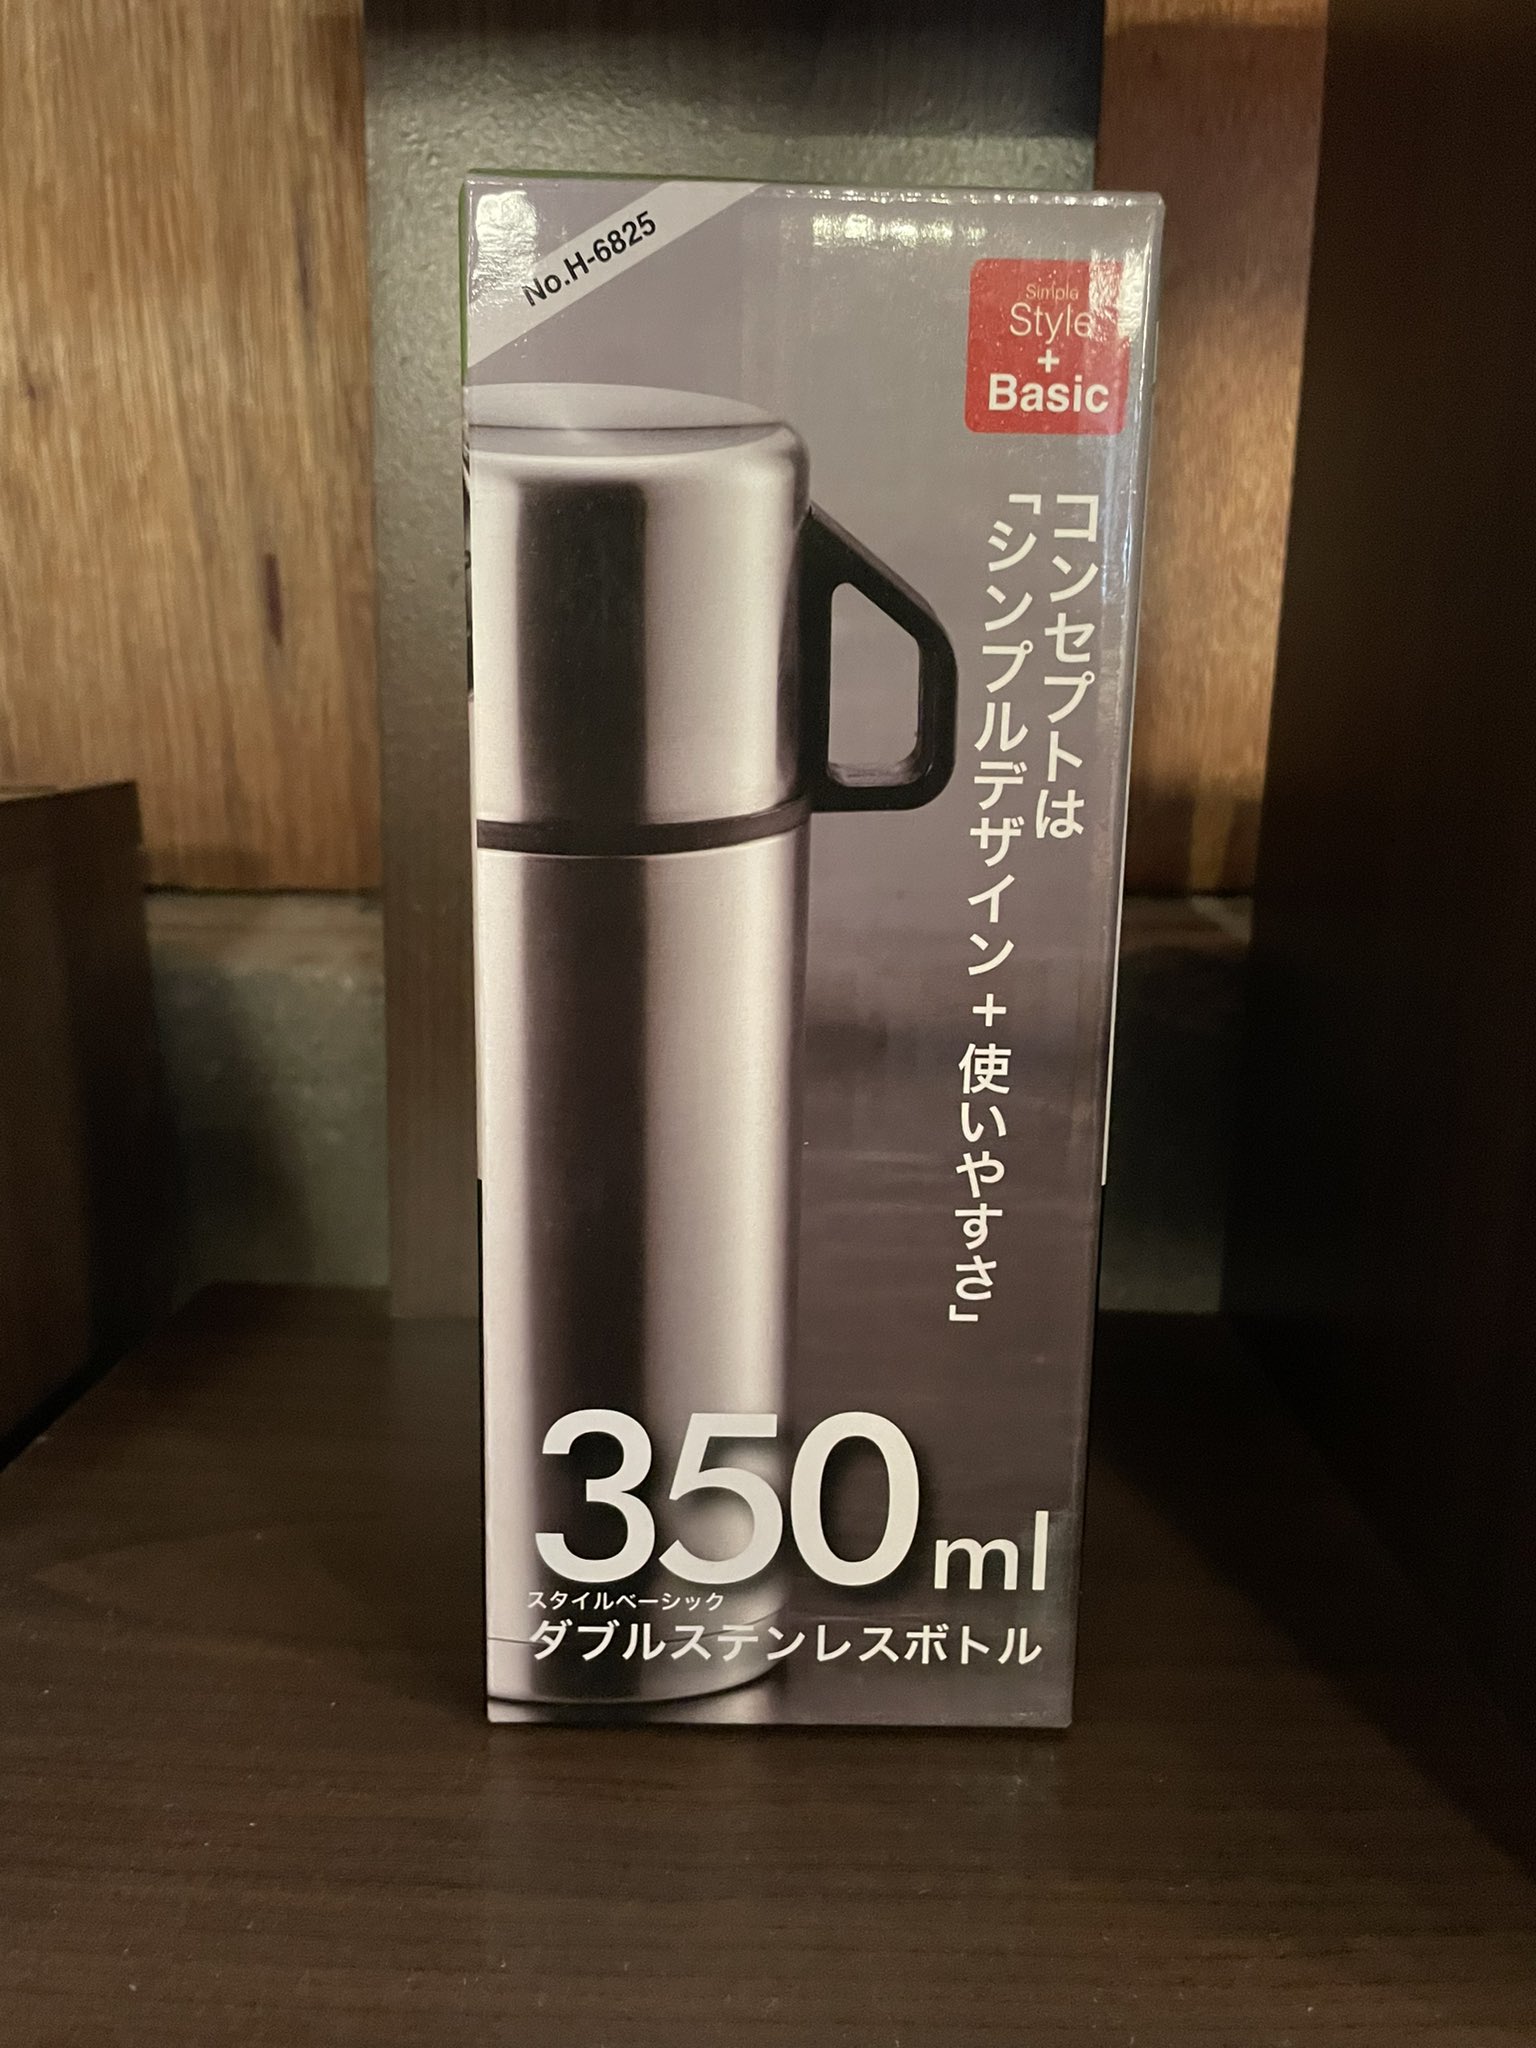 Bình inox giữ nhiệt 2 in1 Pearl Metal Basic Double - Hàng nội địa Nhật Bản |#nhập khẩu chính hãng